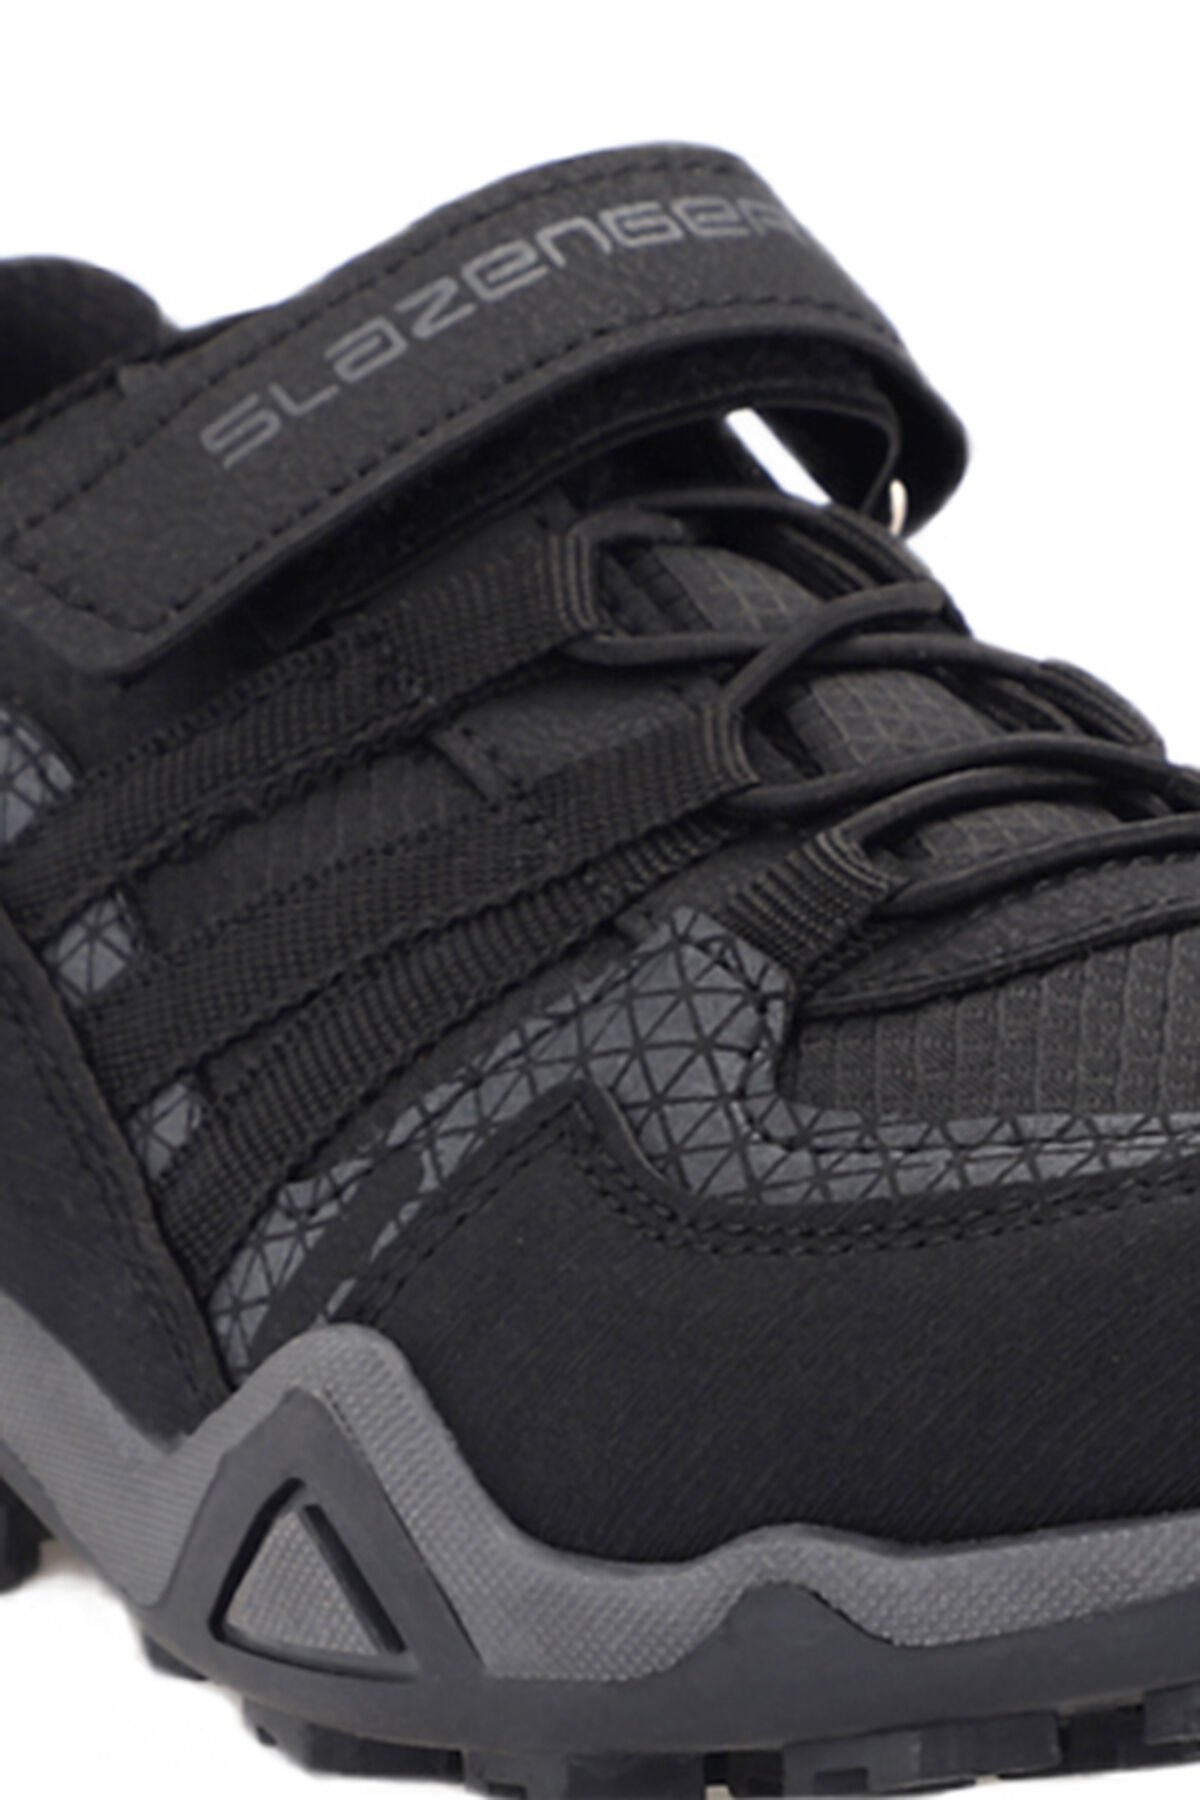 ALDONA Sneaker Erkek Çocuk Ayakkabı Siyah - Thumbnail